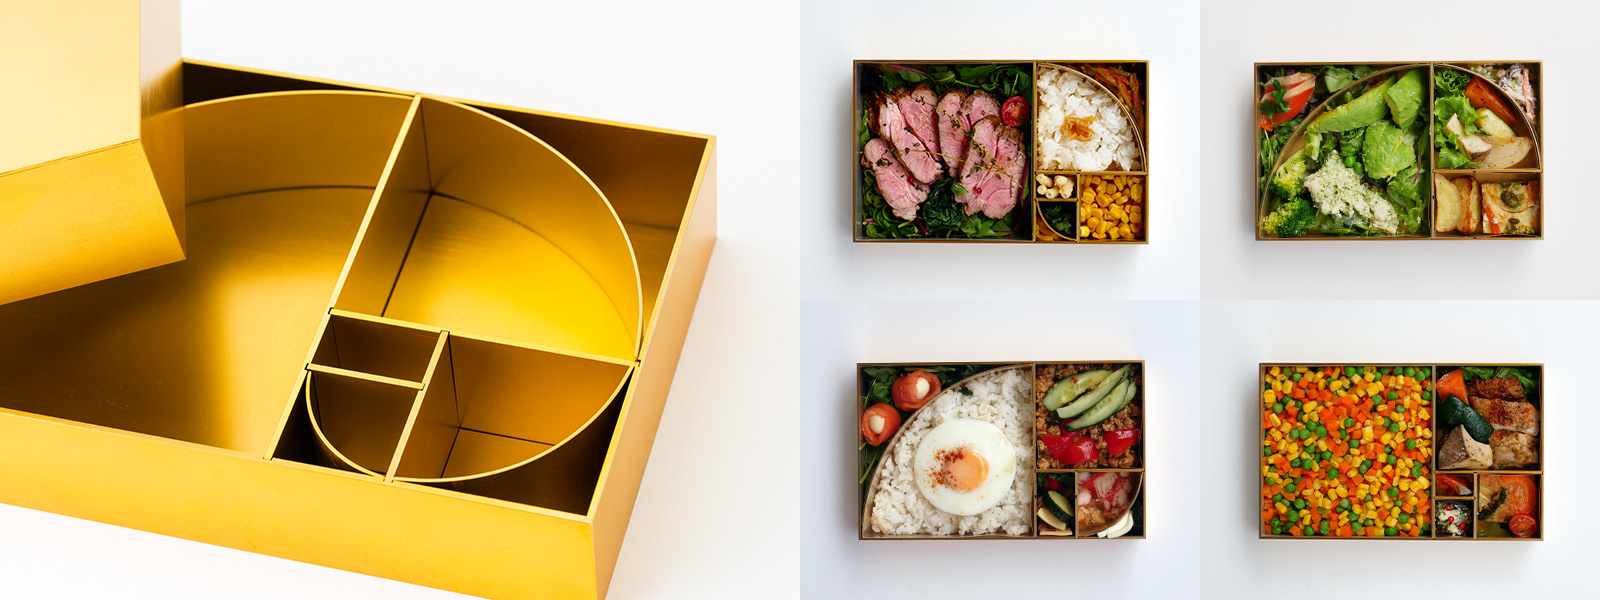 Photo: Golden Ratio Bento Box